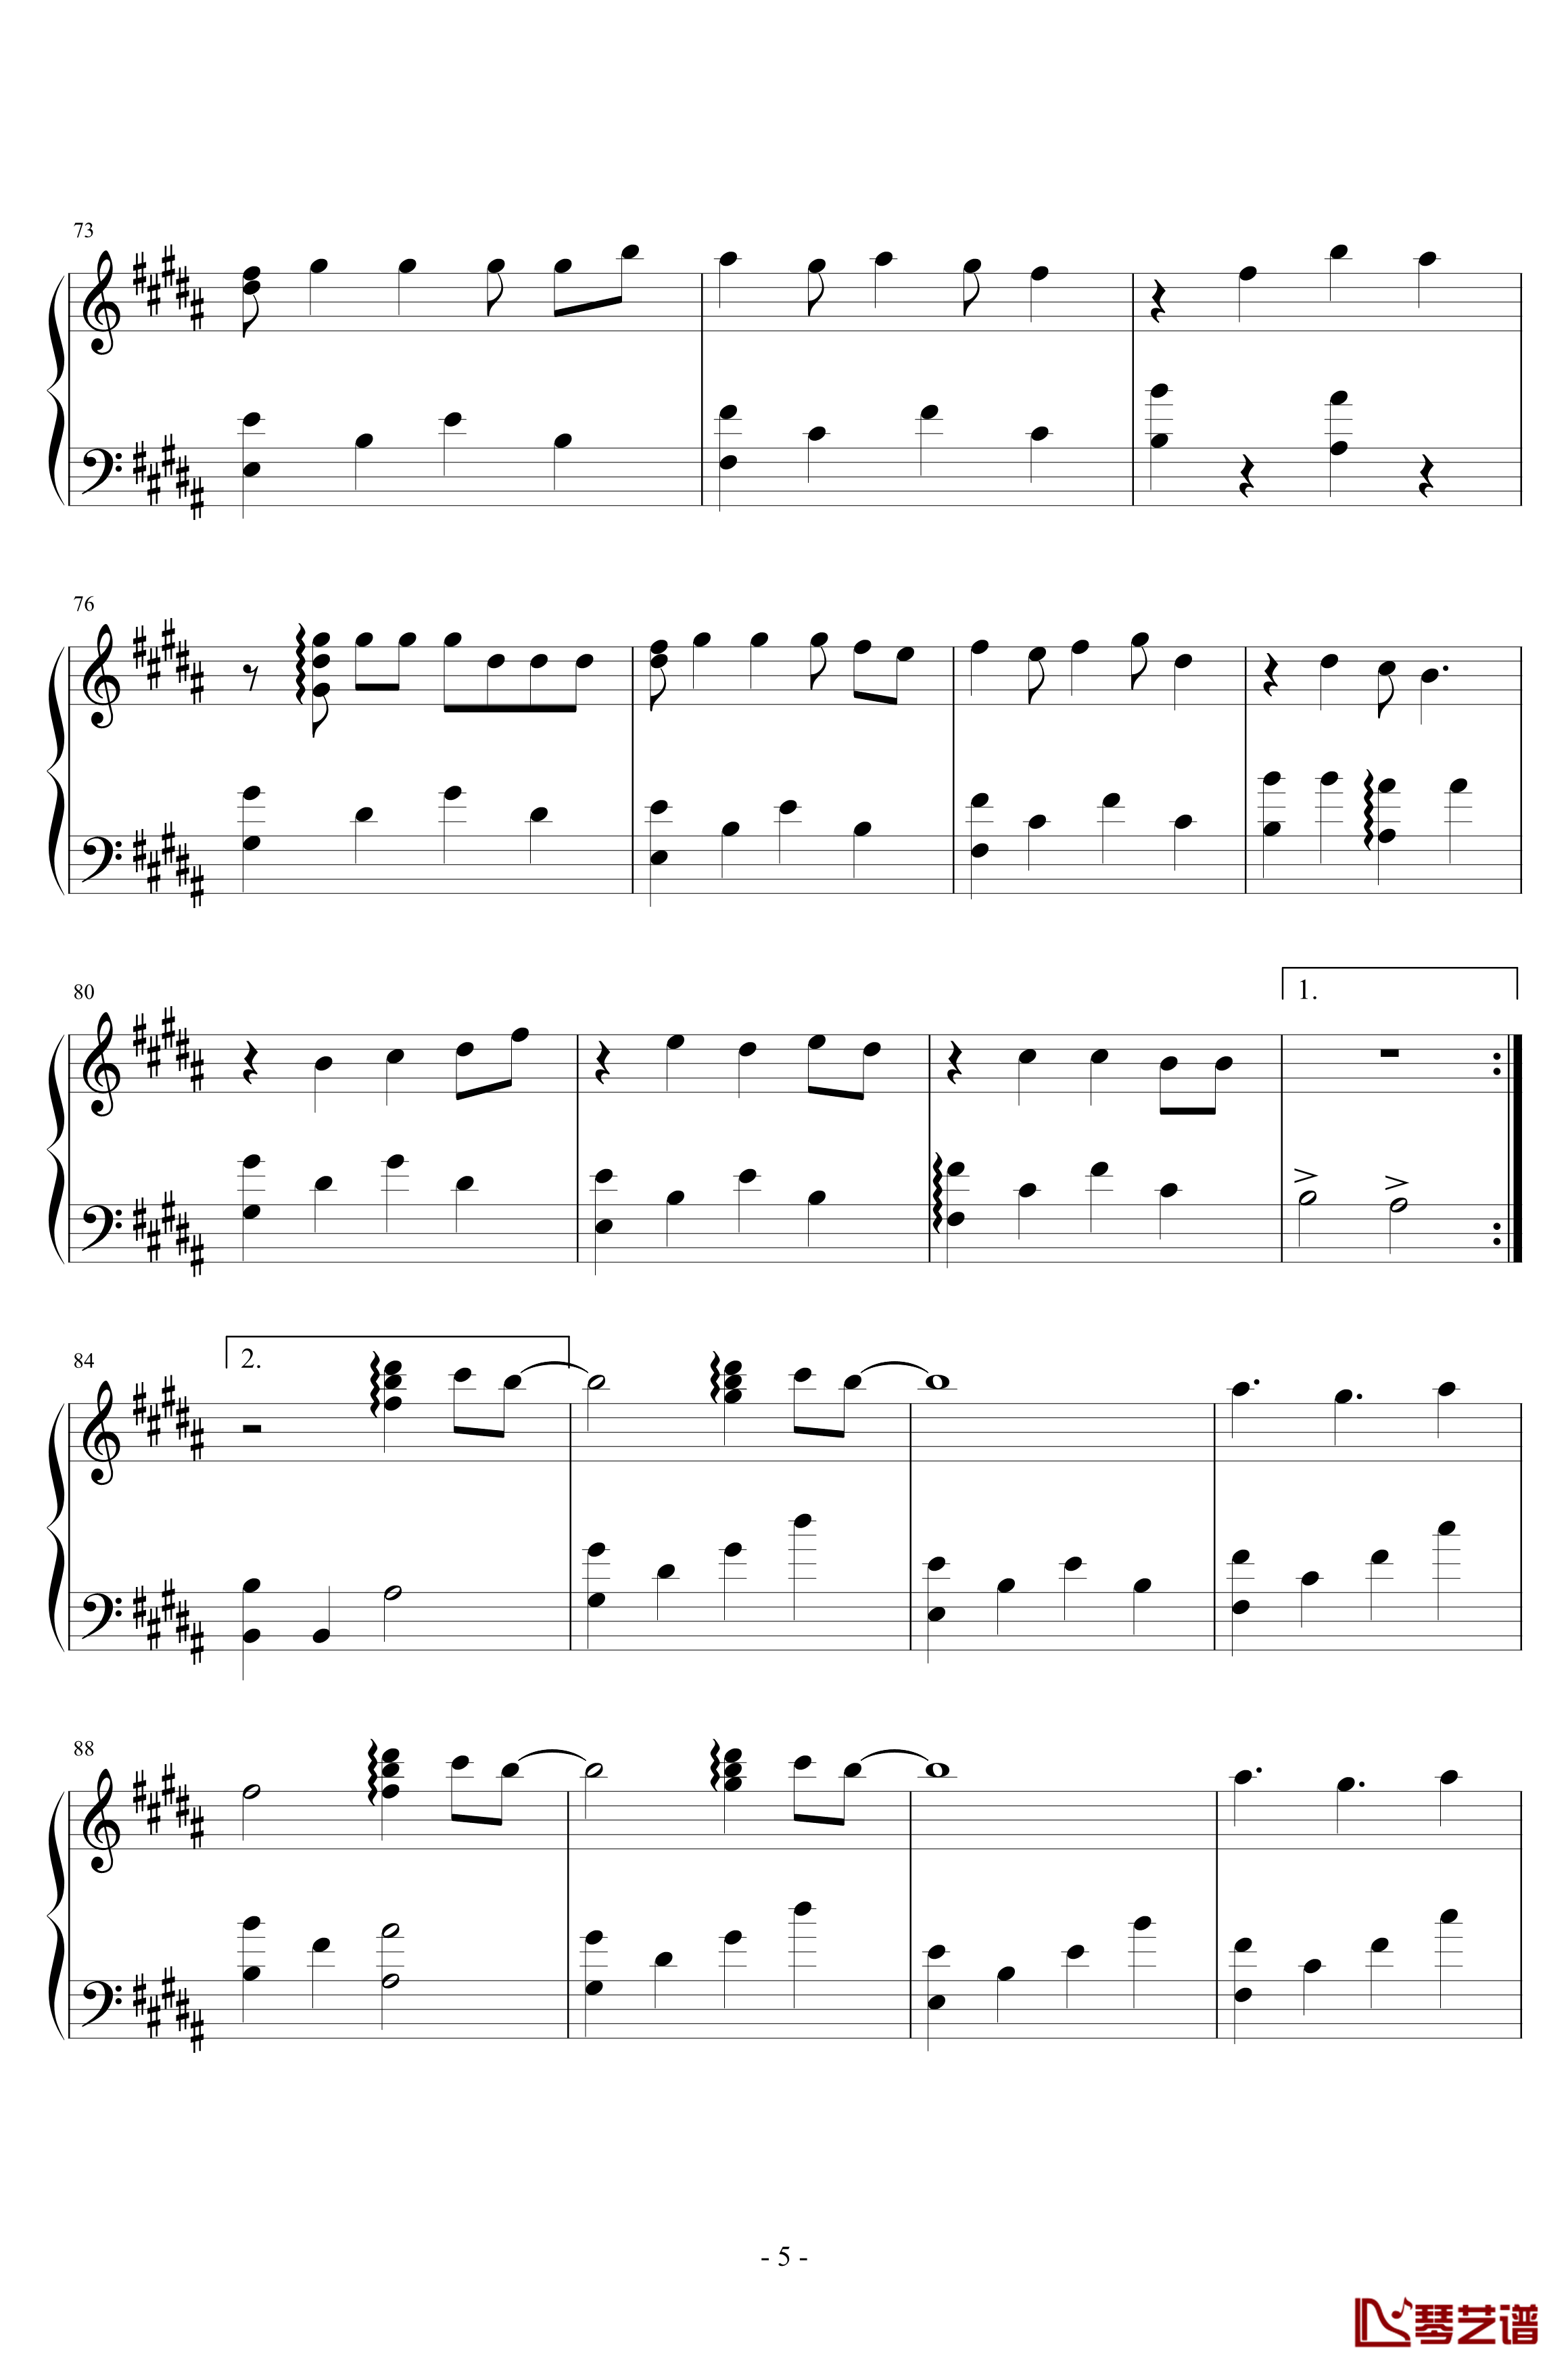 A Song for XX钢琴谱-滨崎步5